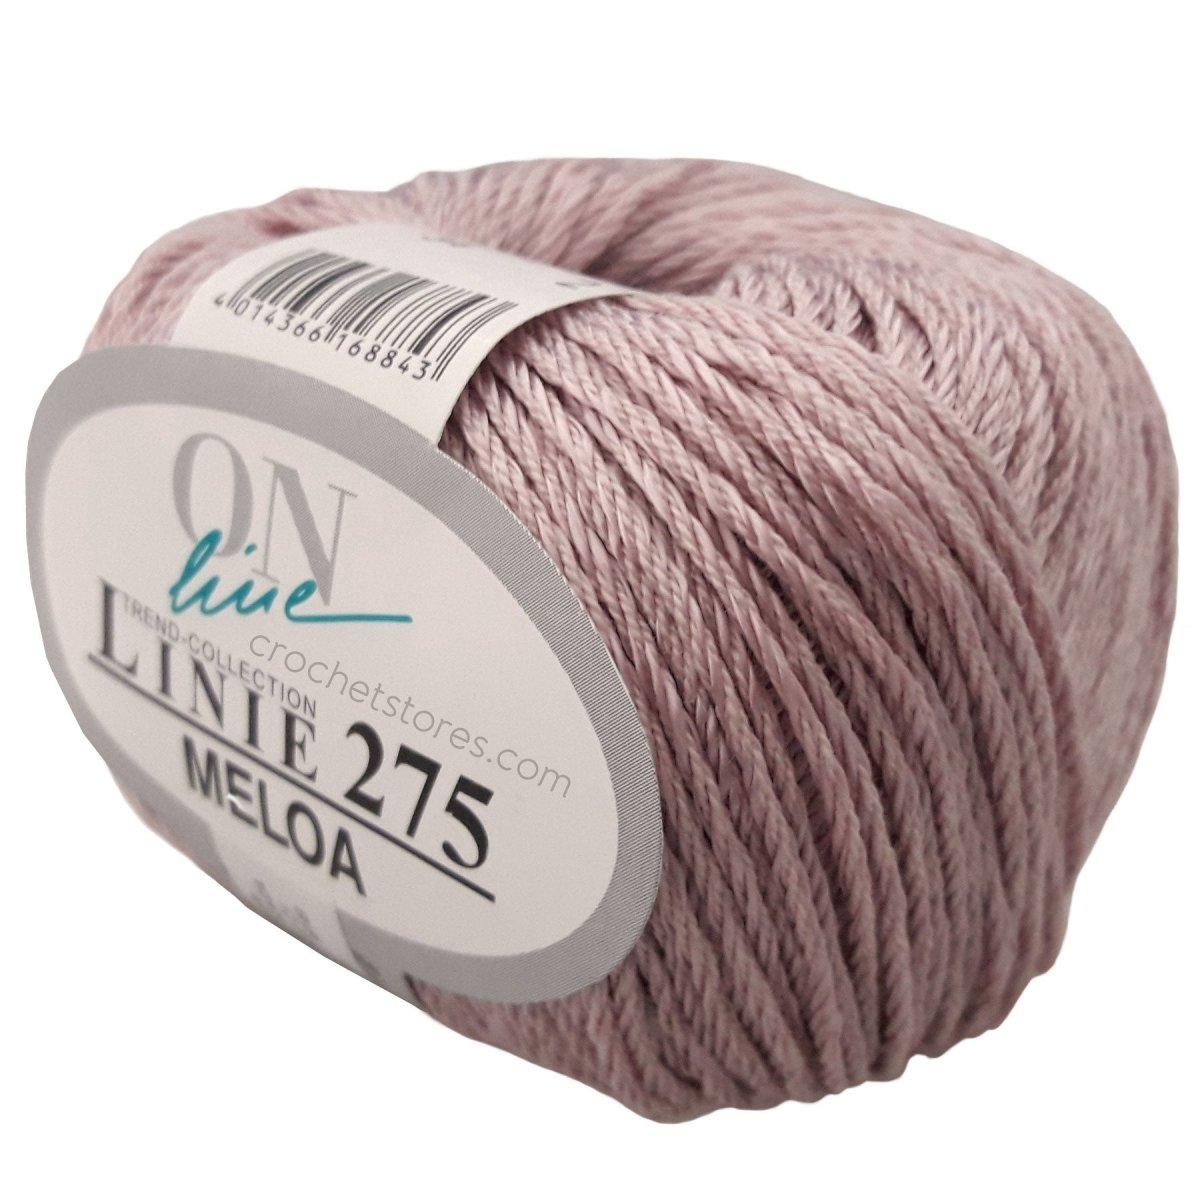 MELOA - Crochetstores110275-00344014366168843